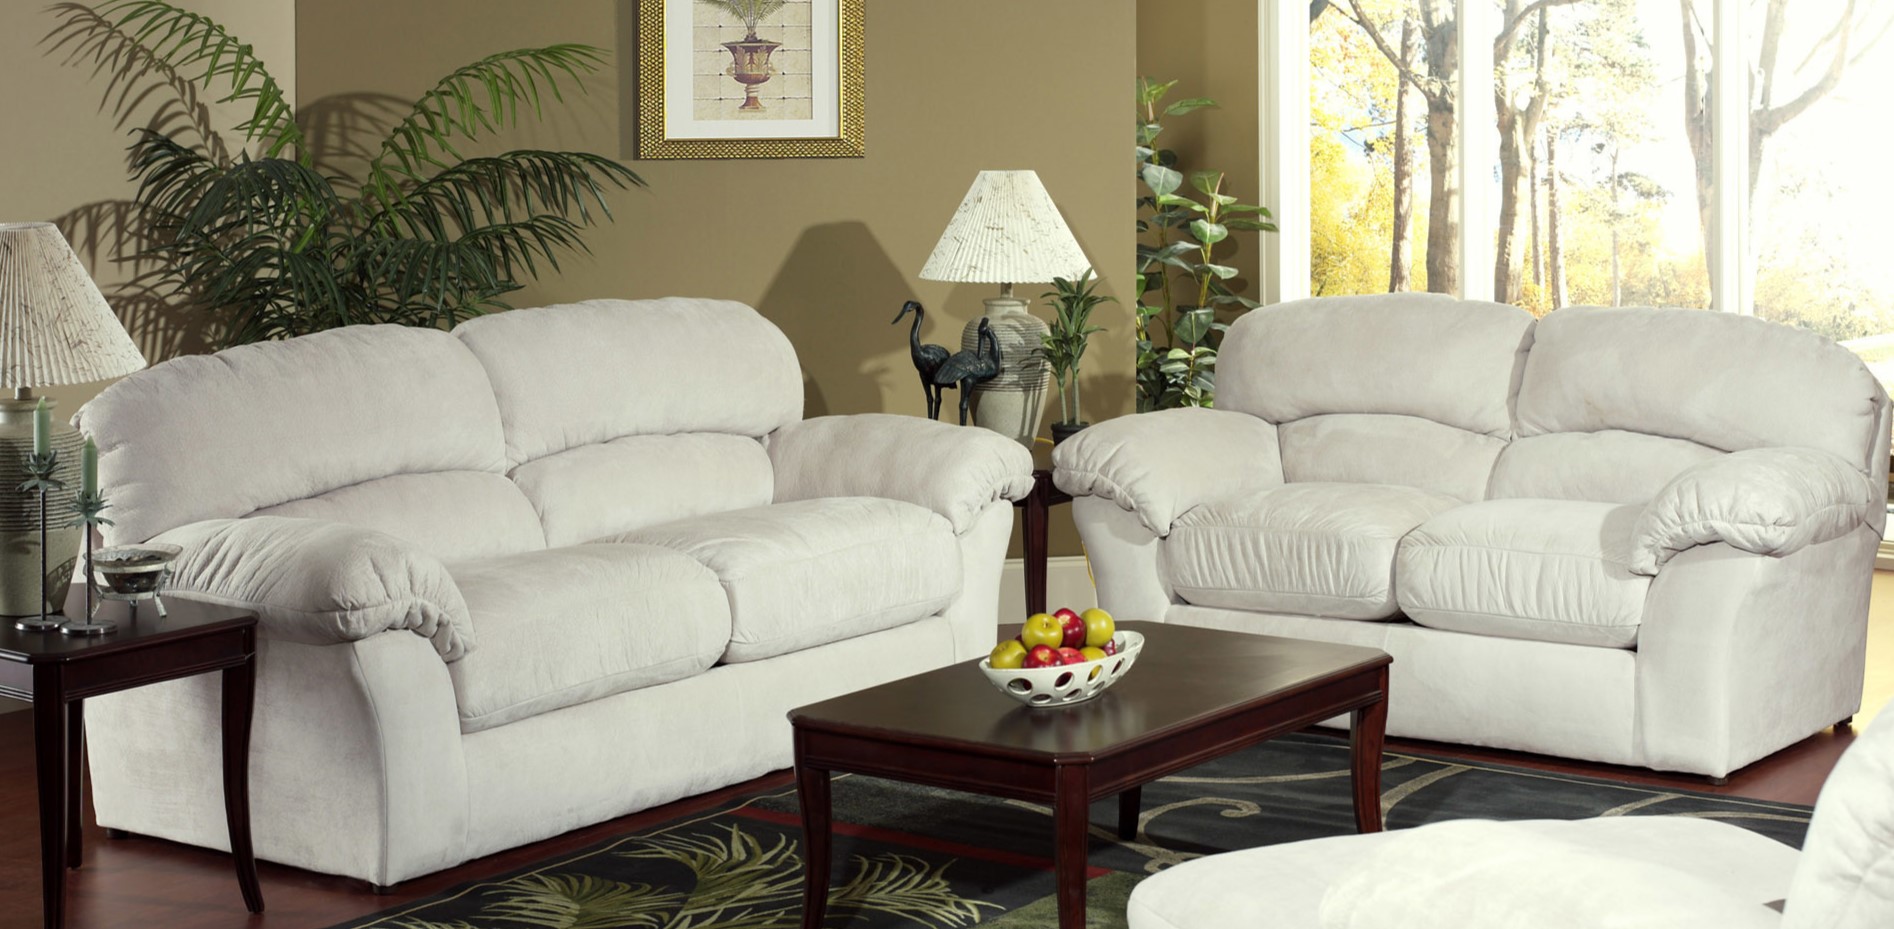 Два дивана позволяют визуально выделить зону отдыха в гостиной